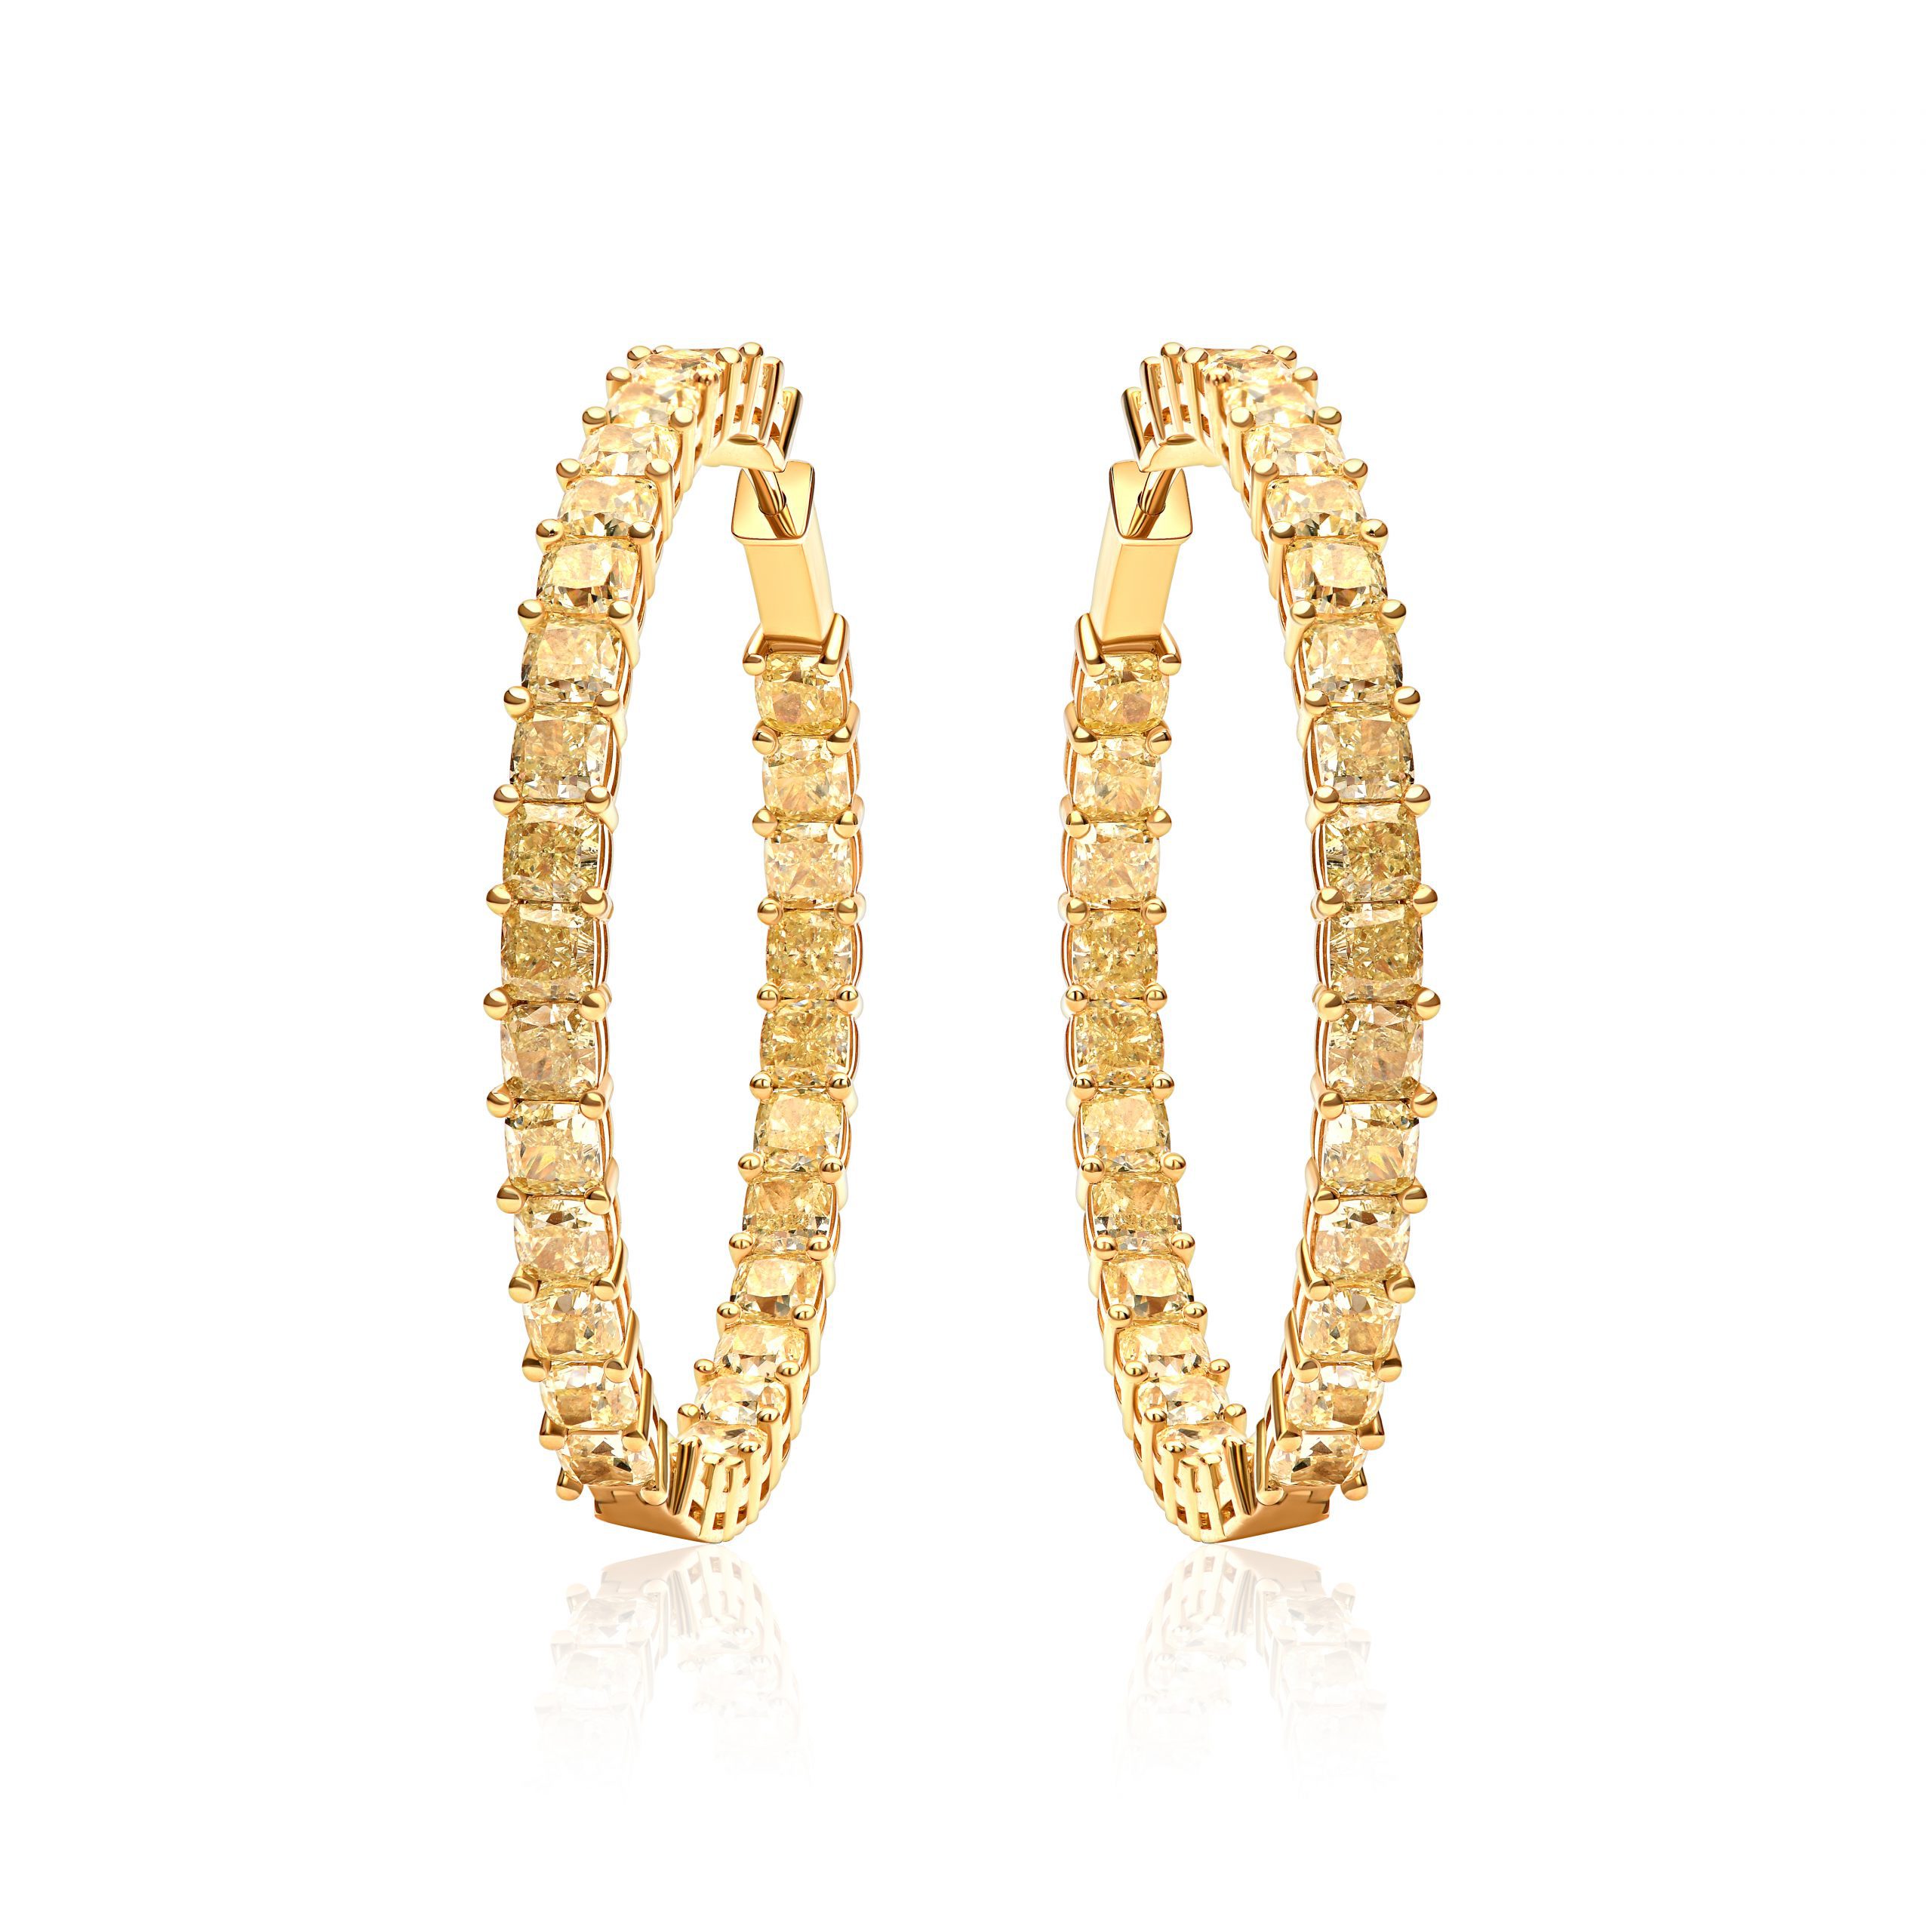 Congo earrings with 18.45 ct yellow diamonds #1